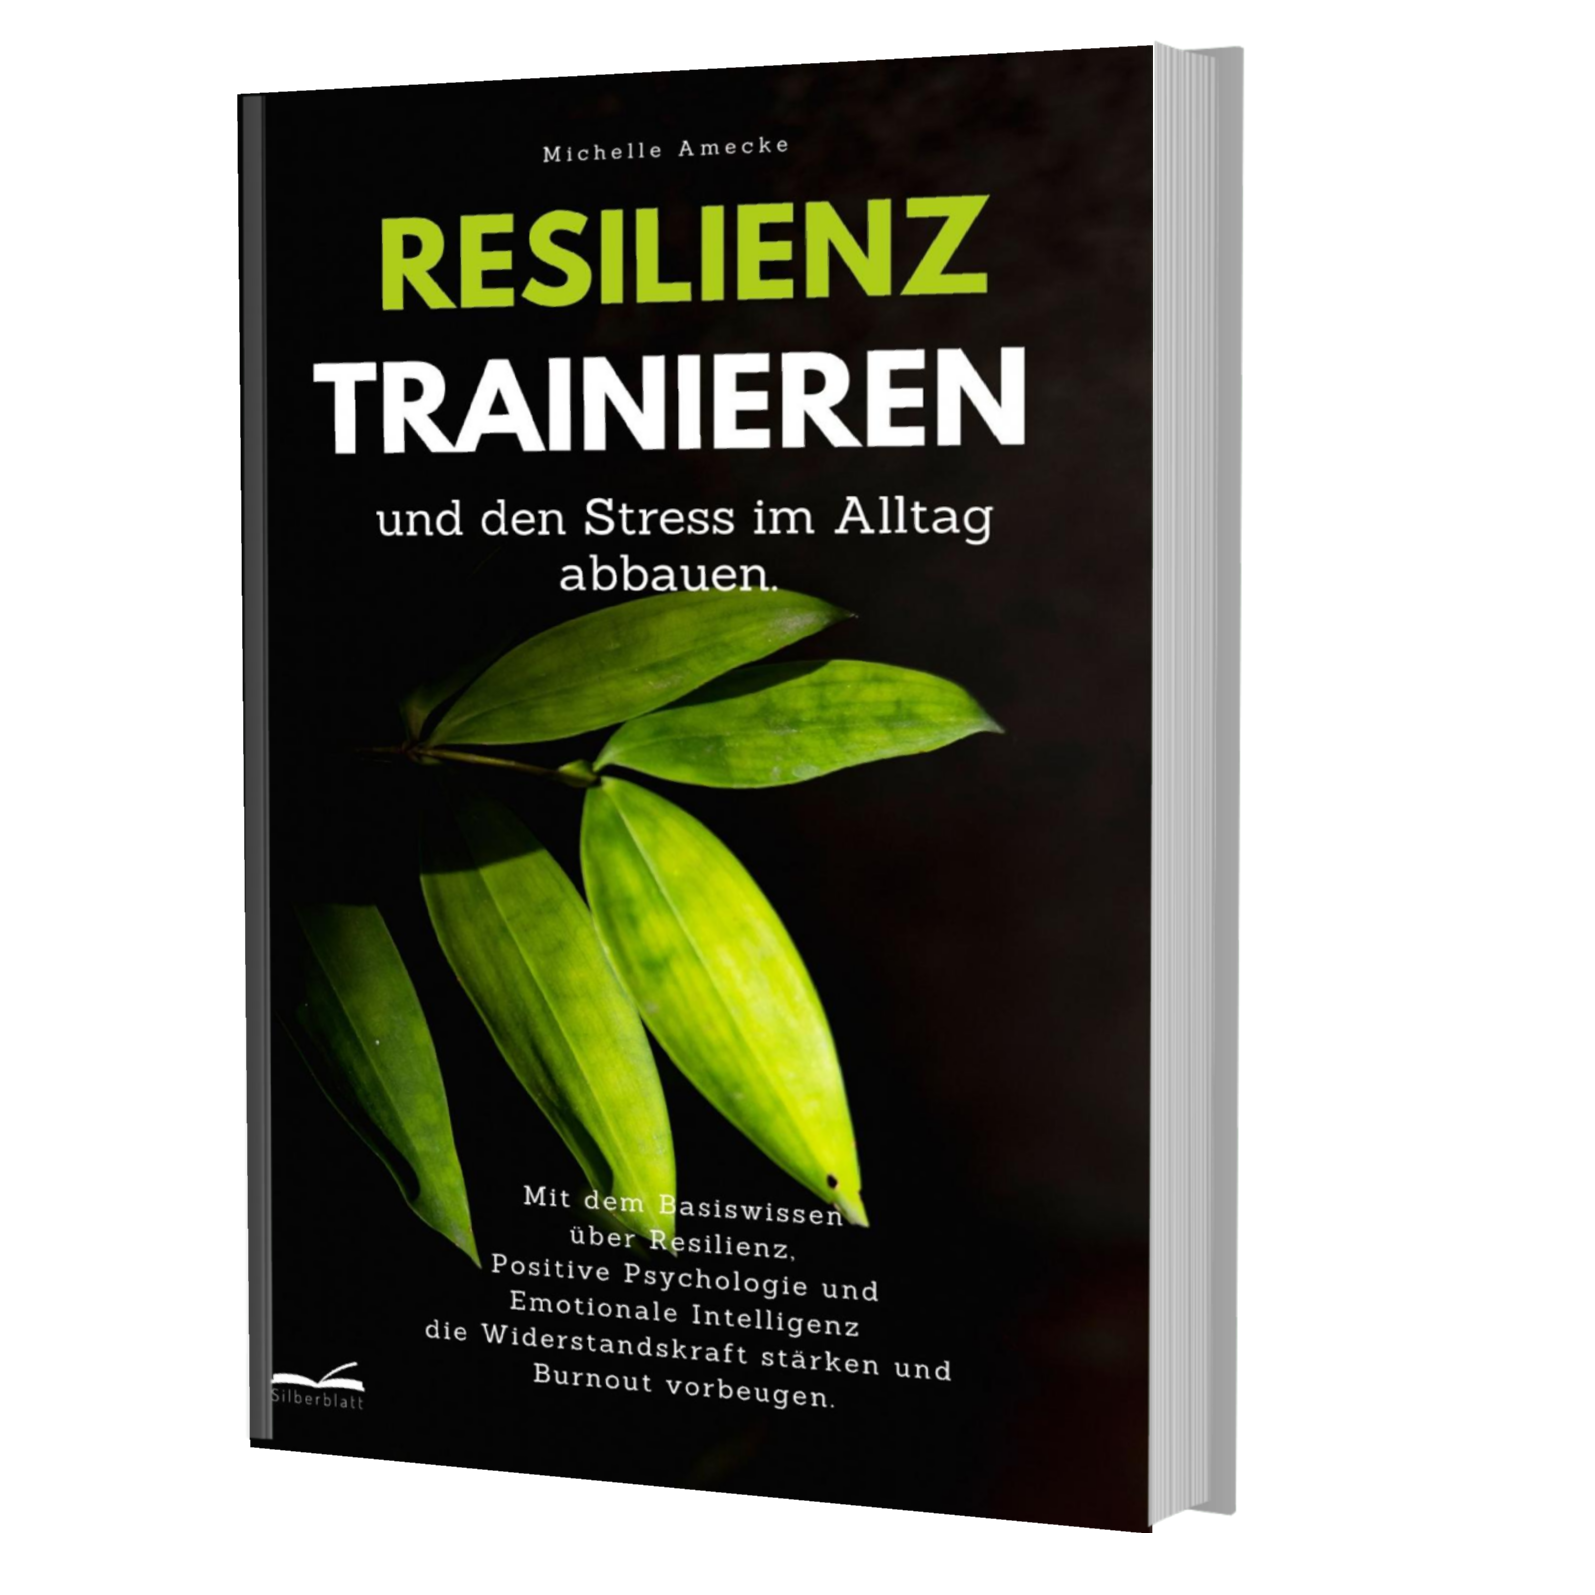 Resilienz trainieren